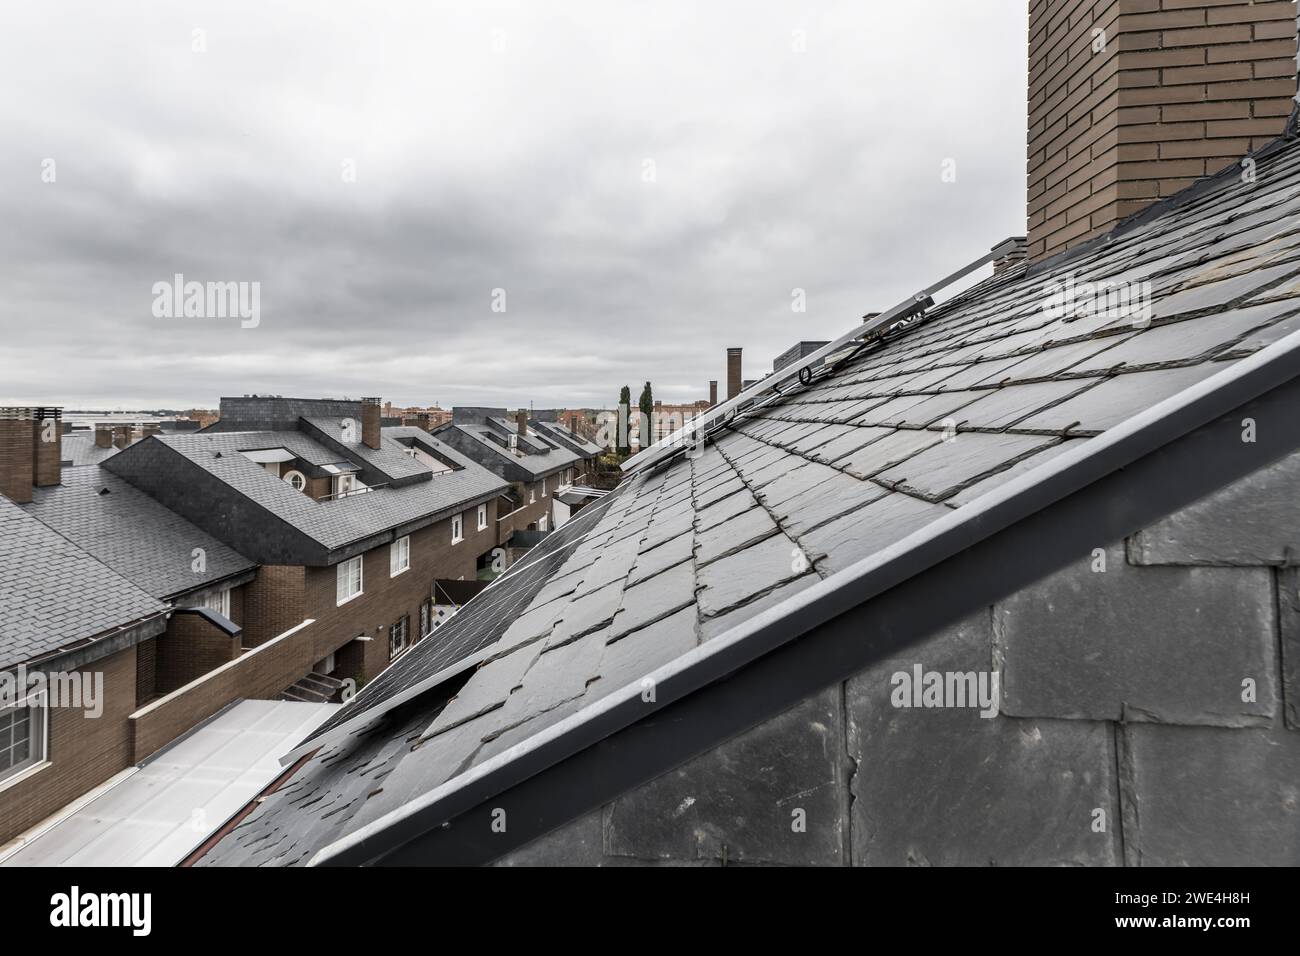 Dächer eines Wohnviertels mit schwarzen Schieferziegeln und Solarpaneelen auf den Dächern Stockfoto